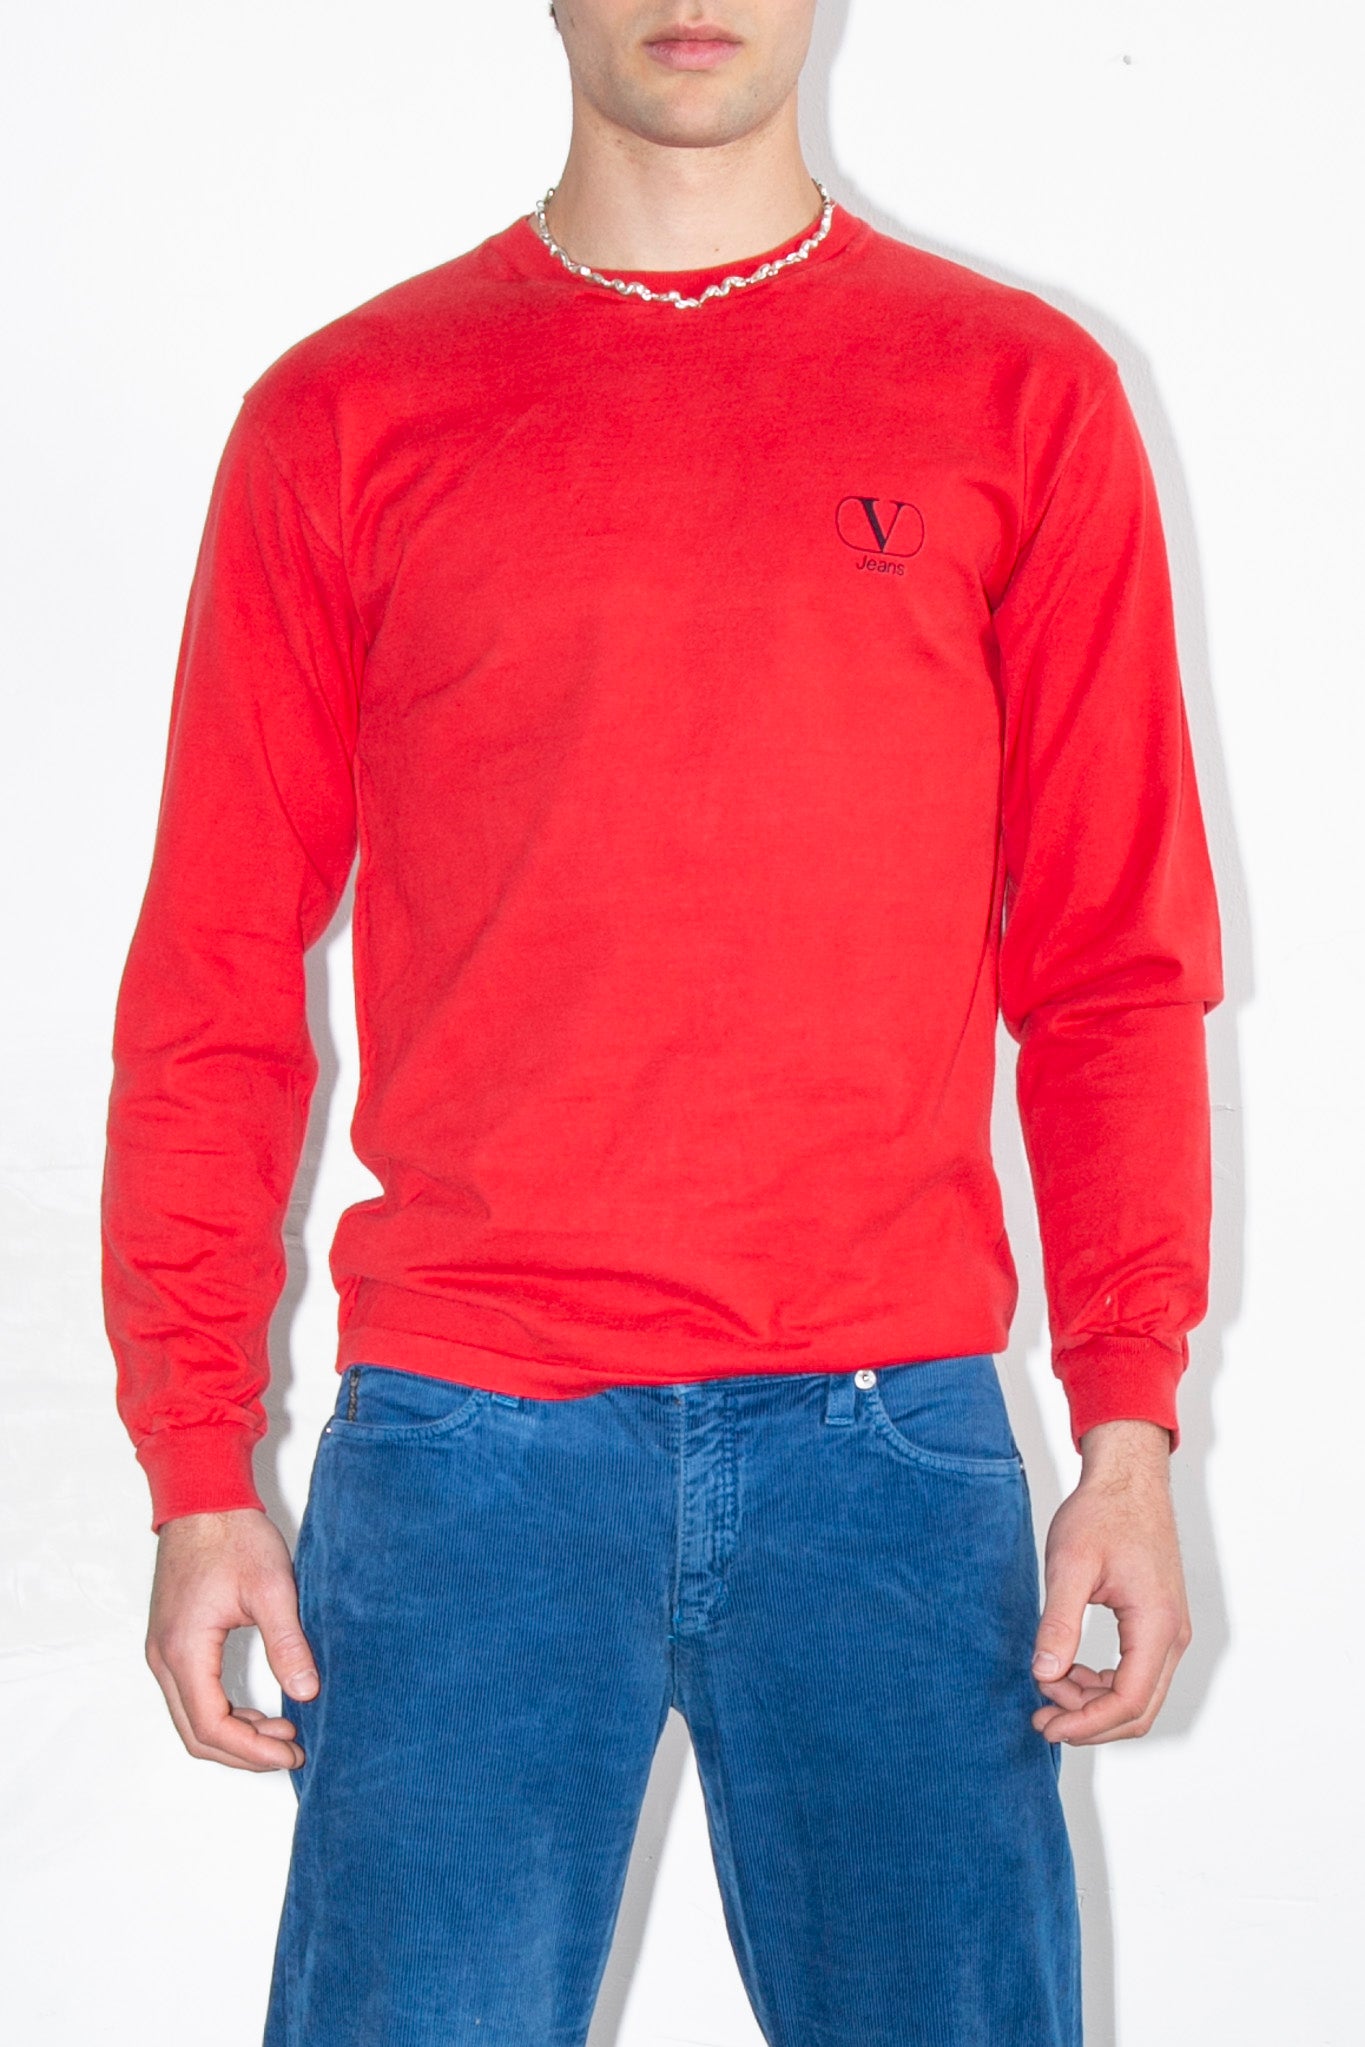 Valentino Red Shirt